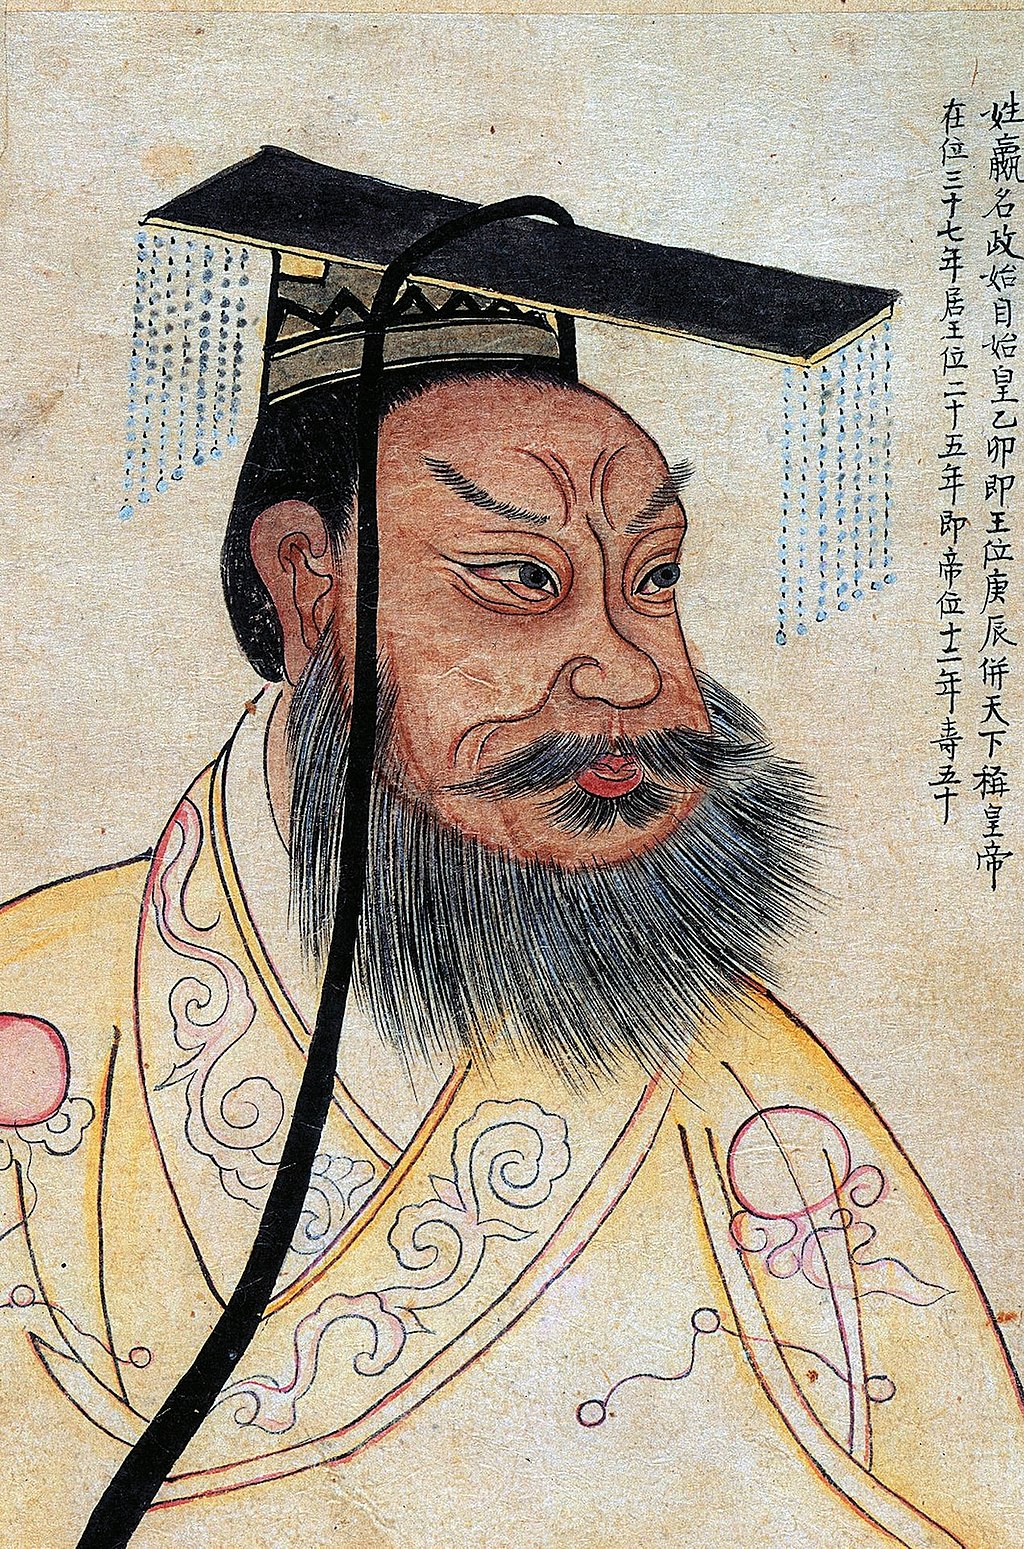 Qin dynasty